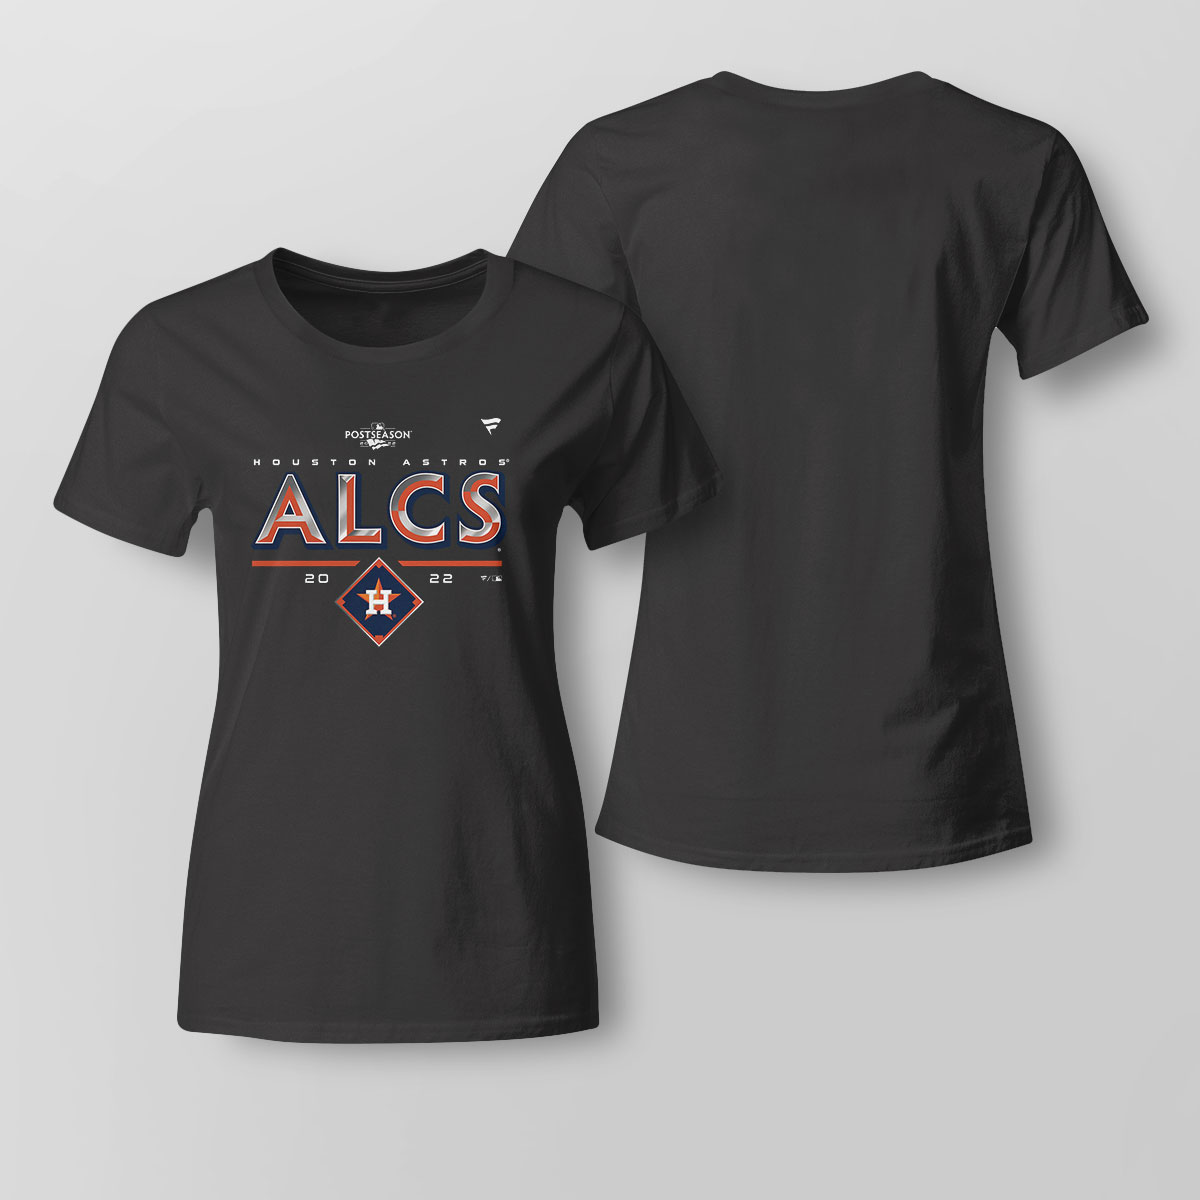 Squad Up Astros Signature T-Shirt - Torunstyle